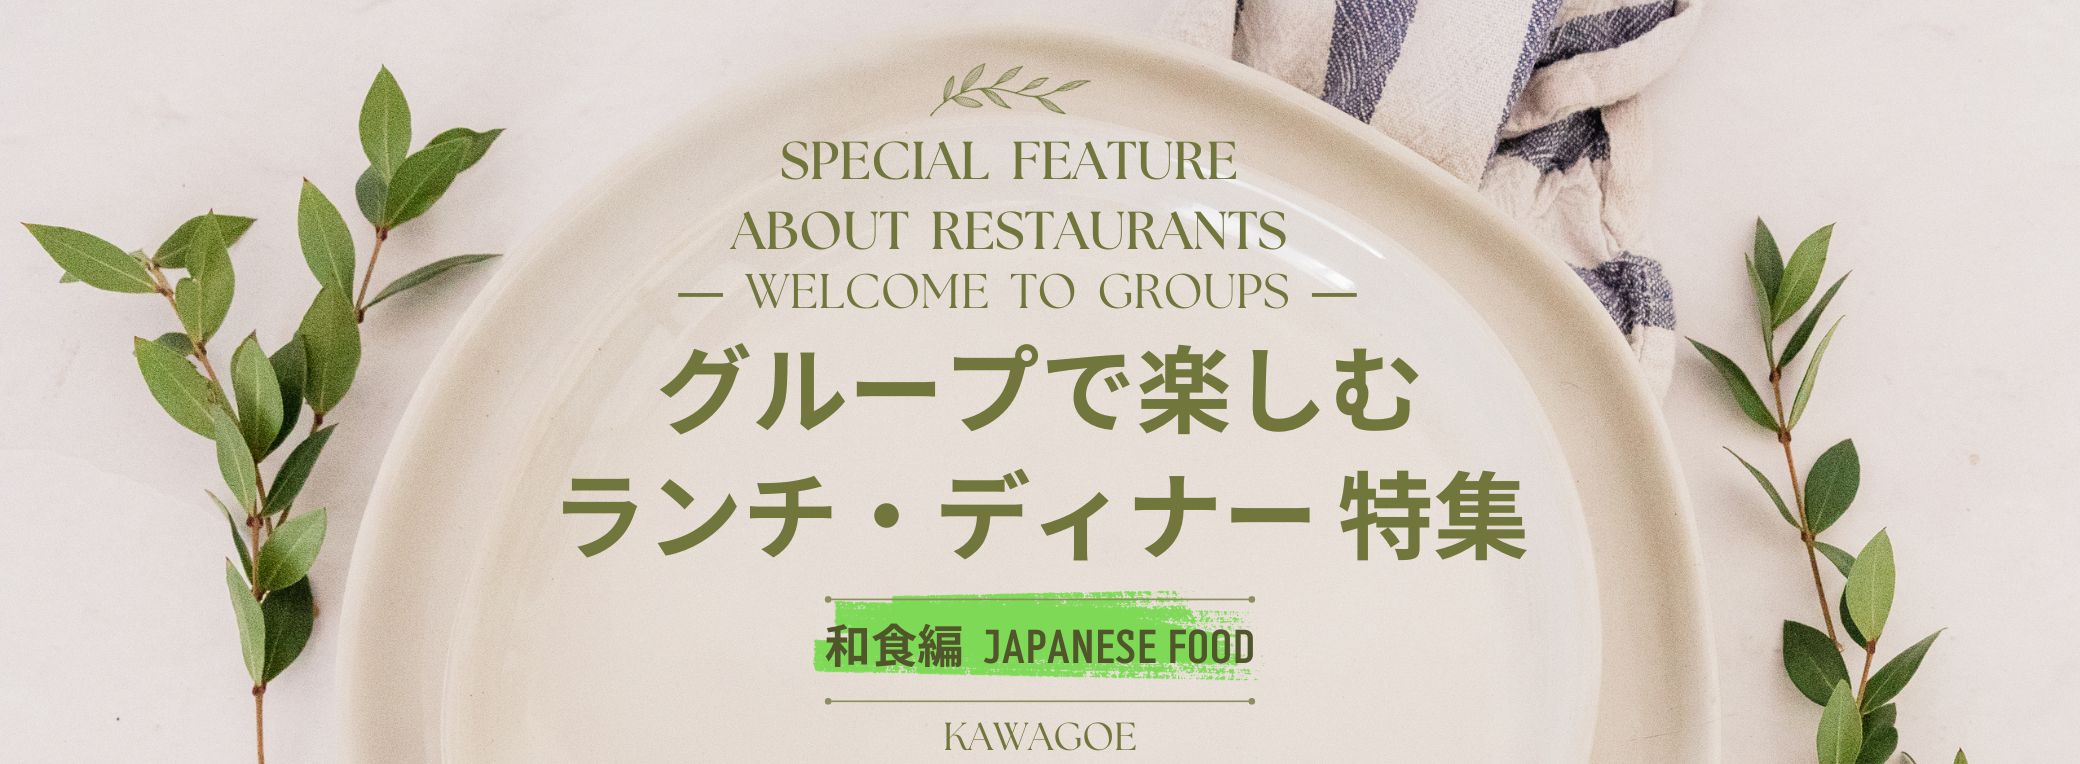 🍴 อาหารกลางวันและอาหารเย็นพิเศษสำหรับหมู่คณะ - ฉบับอาหารญี่ปุ่น - 🎉